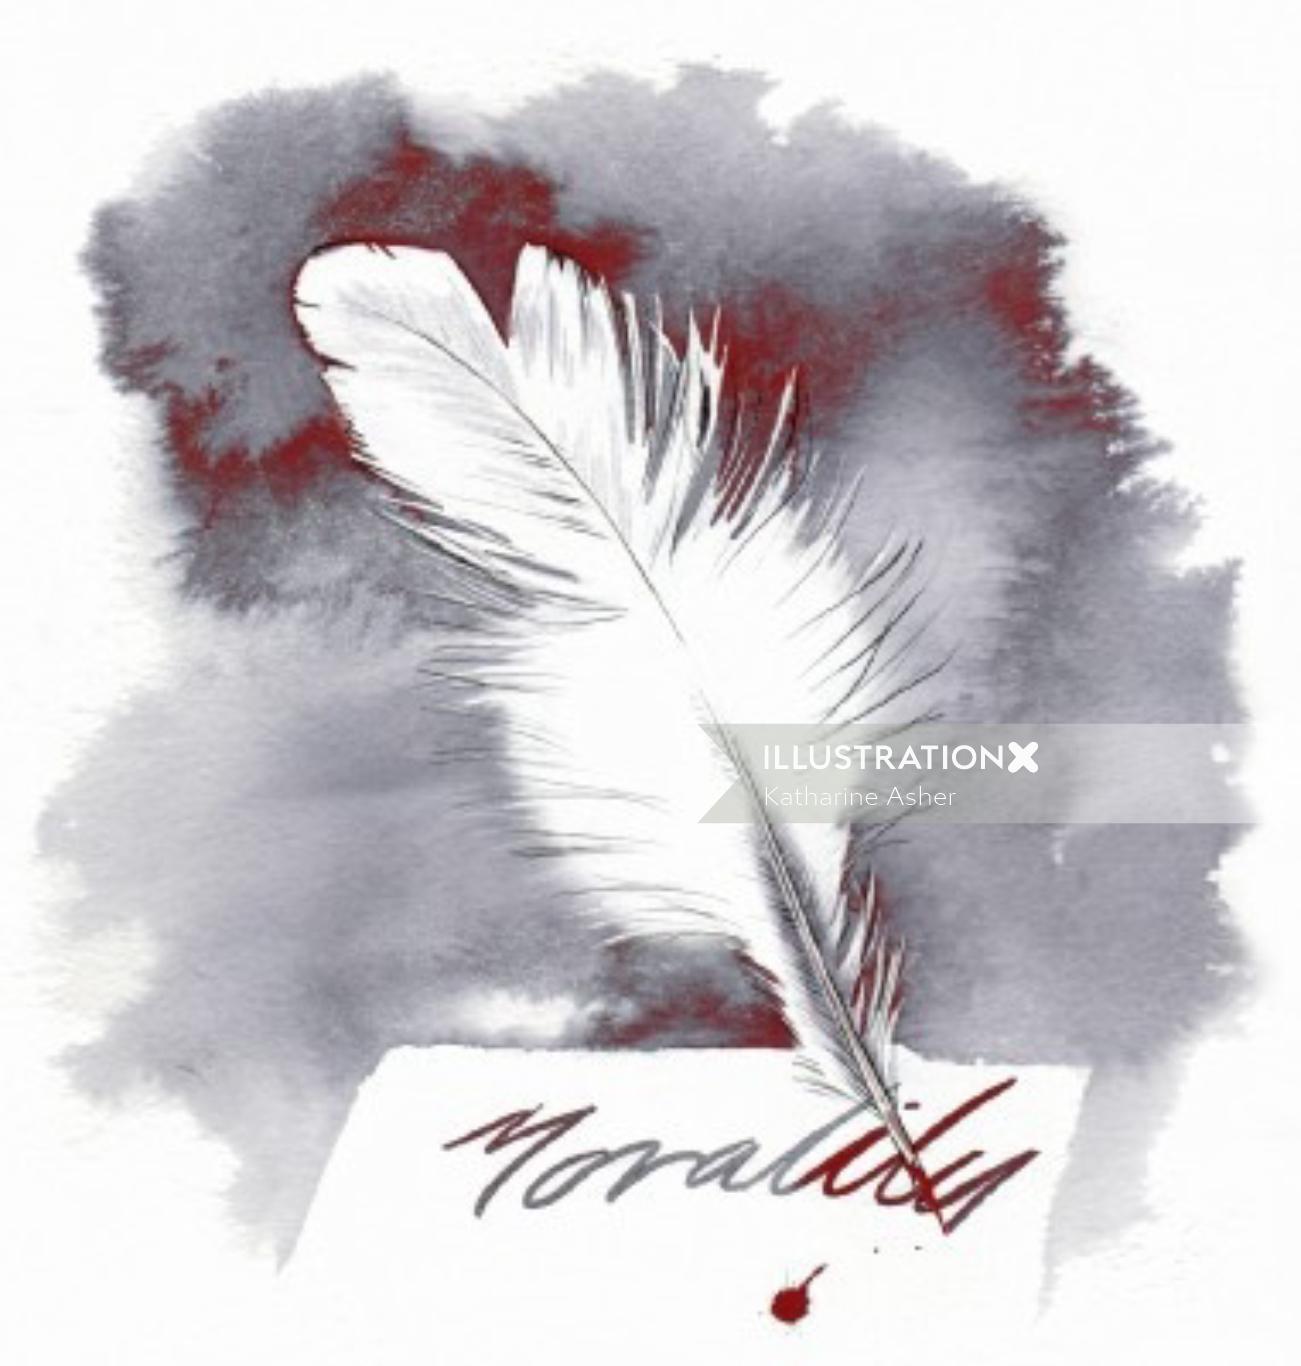 キャサリン・アッシャーによる白い羽のイラスト